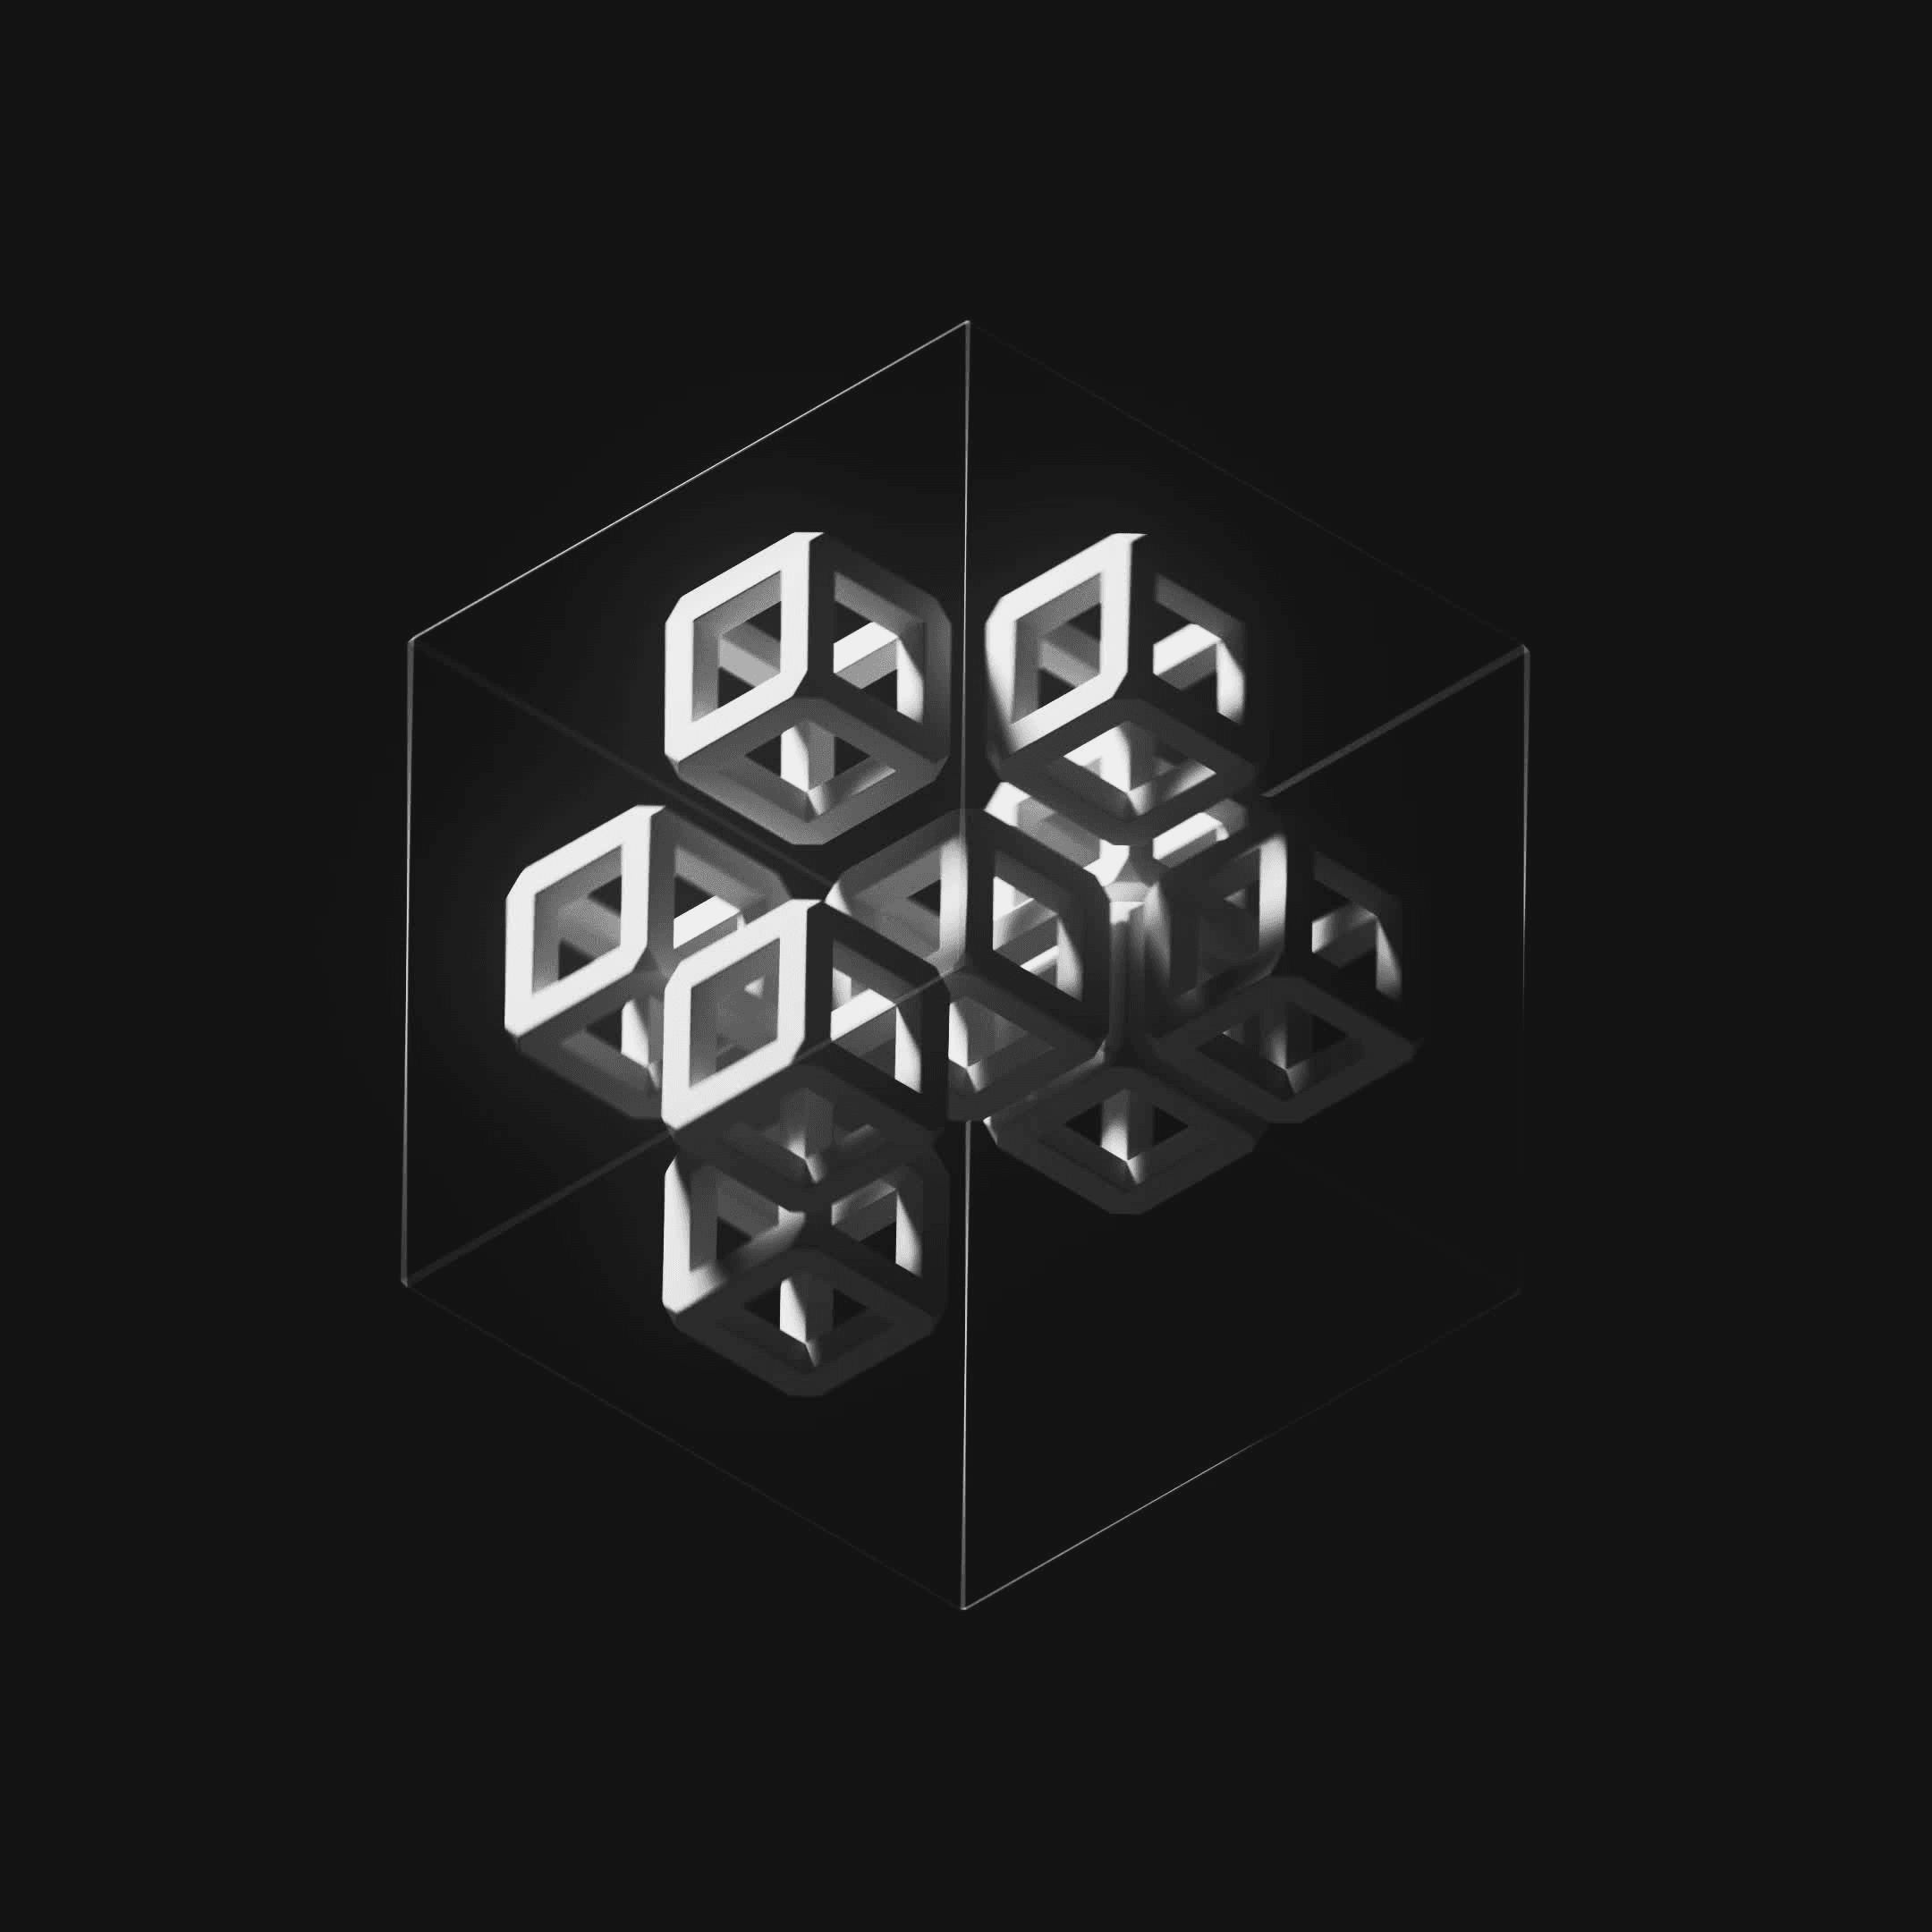 Ten Cubes #81/247